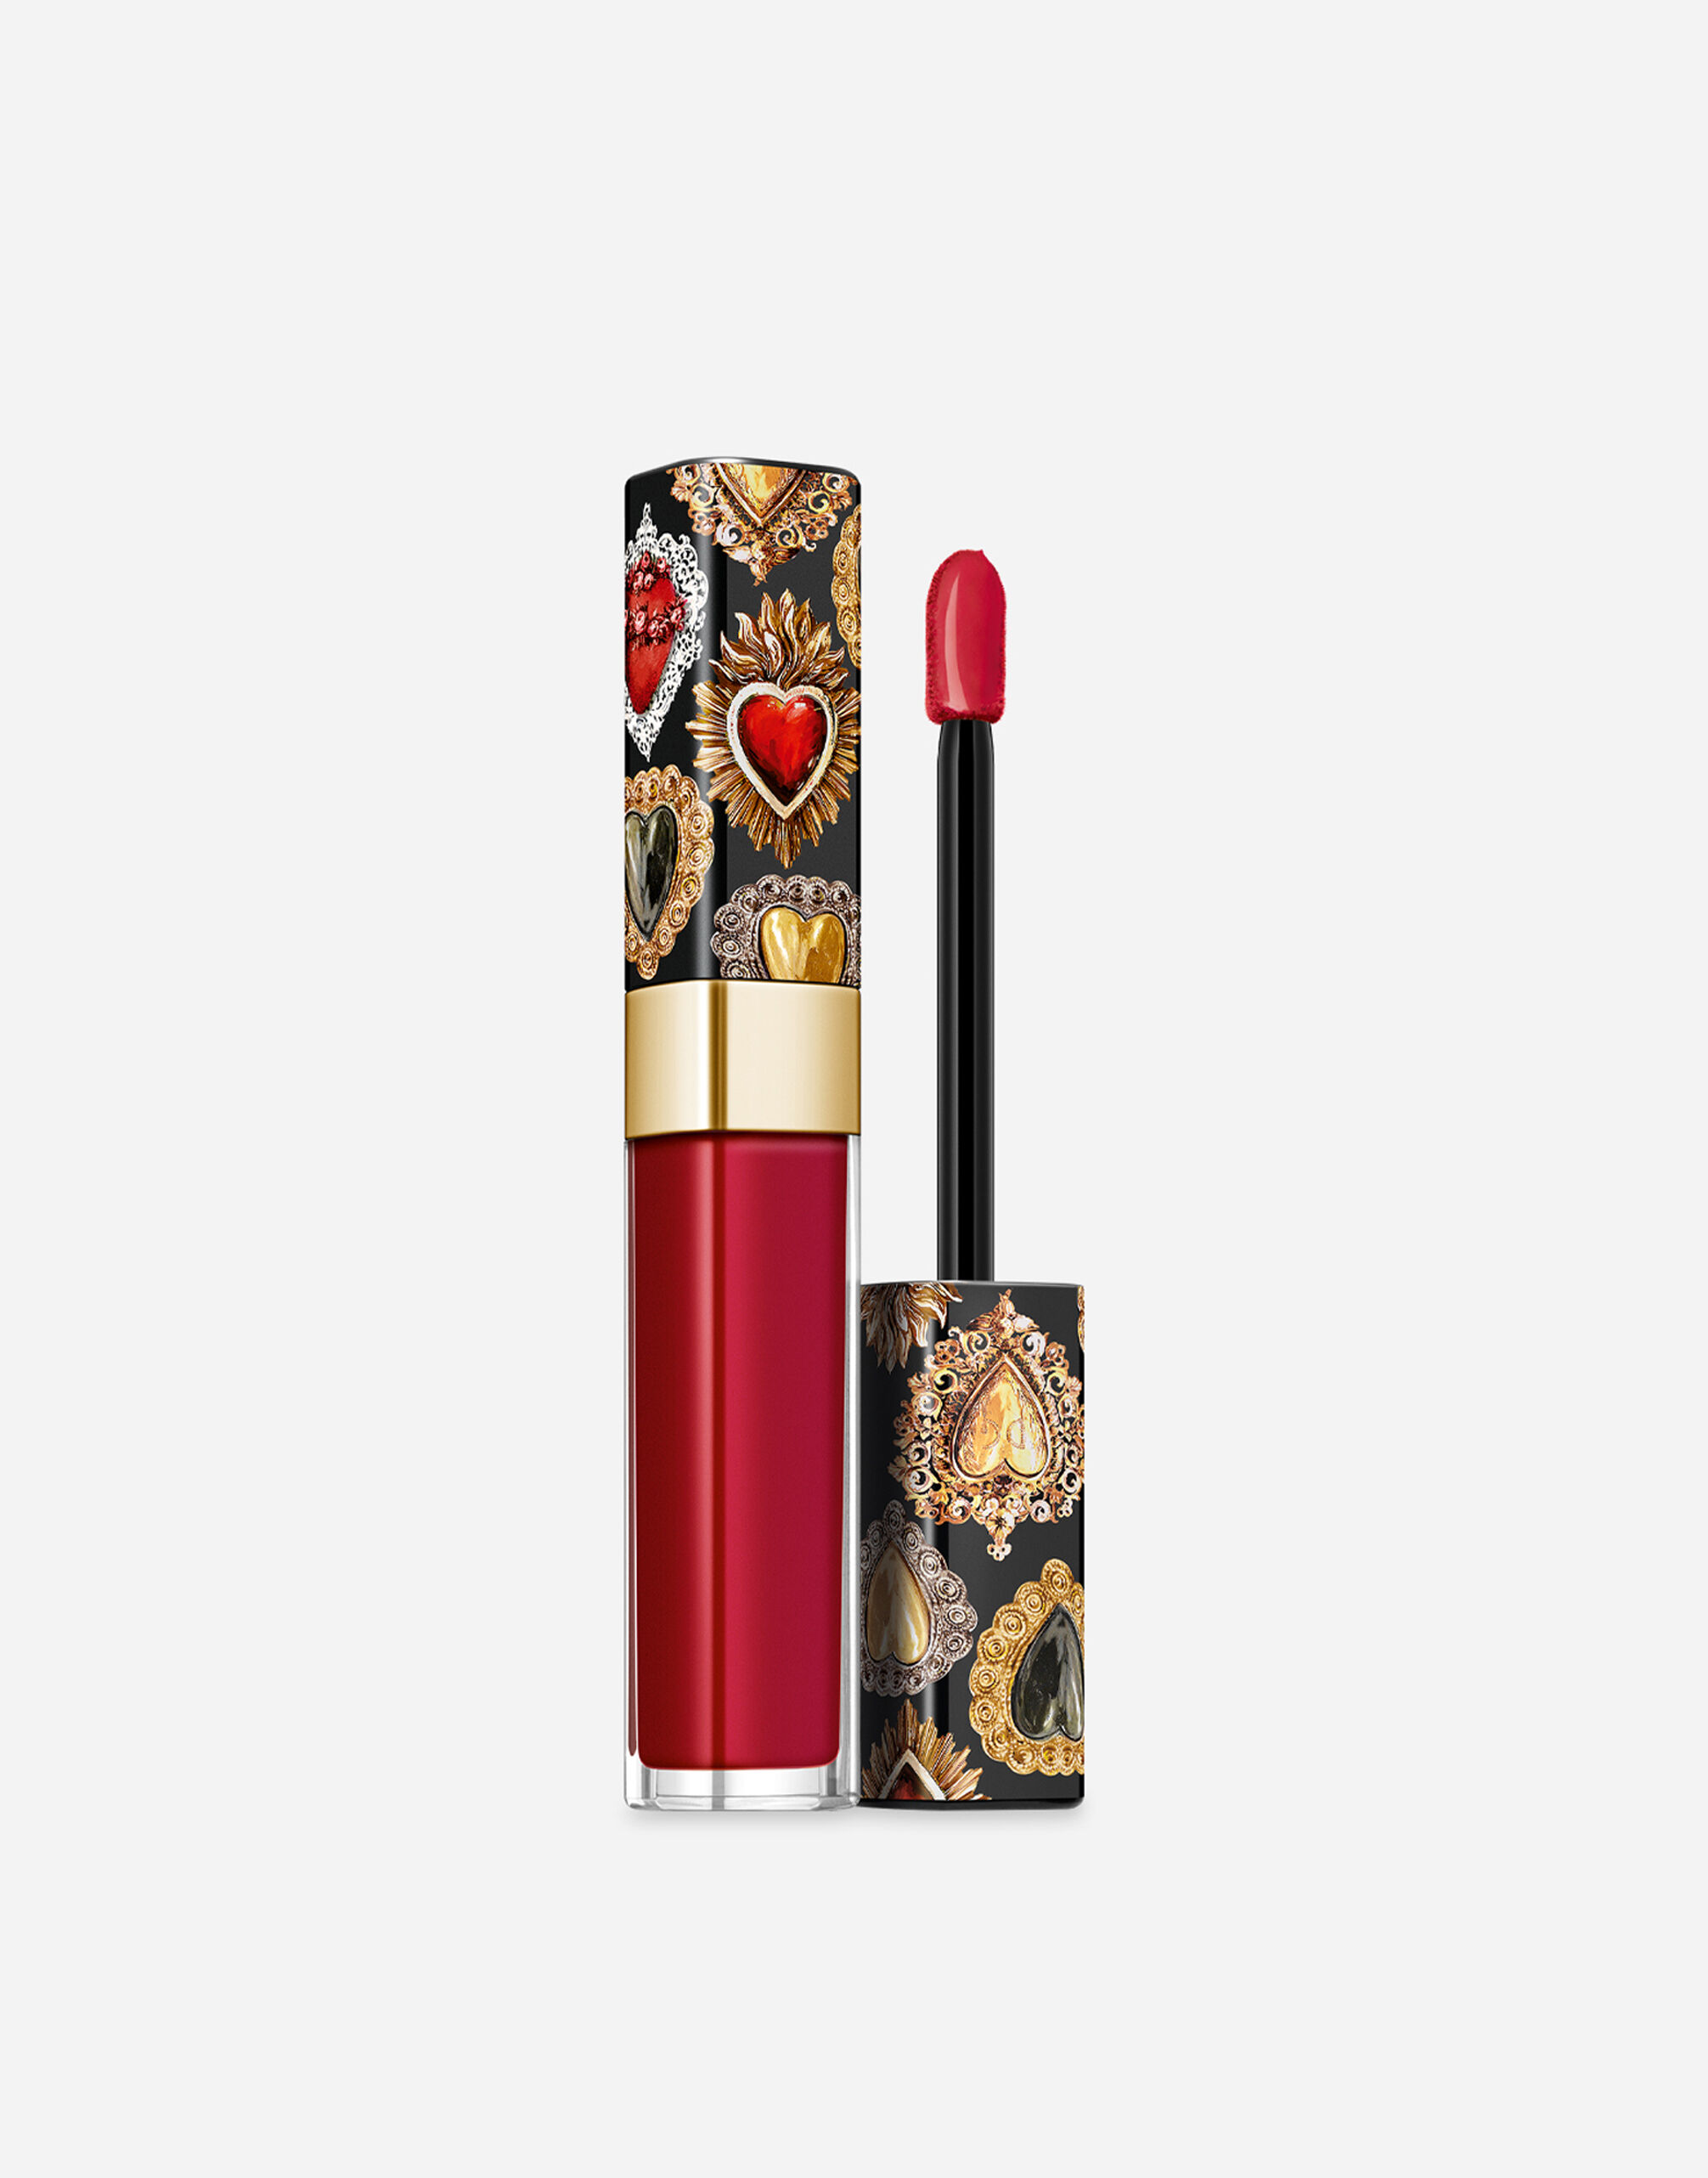 Помада-лак для губ Dolce & Gabbana Shinissimo жидкая, №640 DG Amore, 4,5 мл помада глянец с принтом губ luscious texture aqua shine effect l04b20 14 red berry 3 2 г